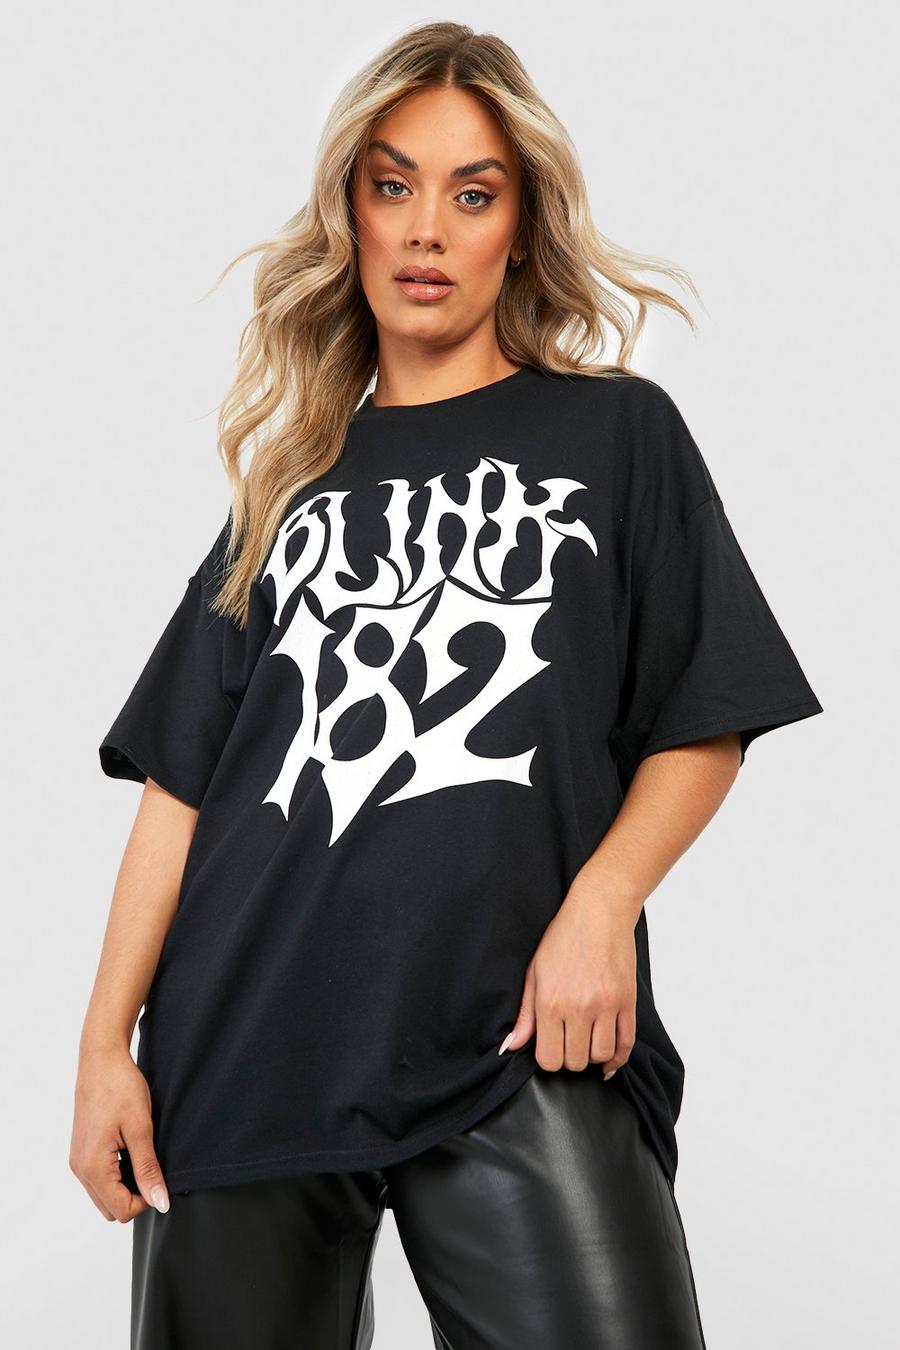 Black negro Plus Oversized Blink 182 License T-shirt